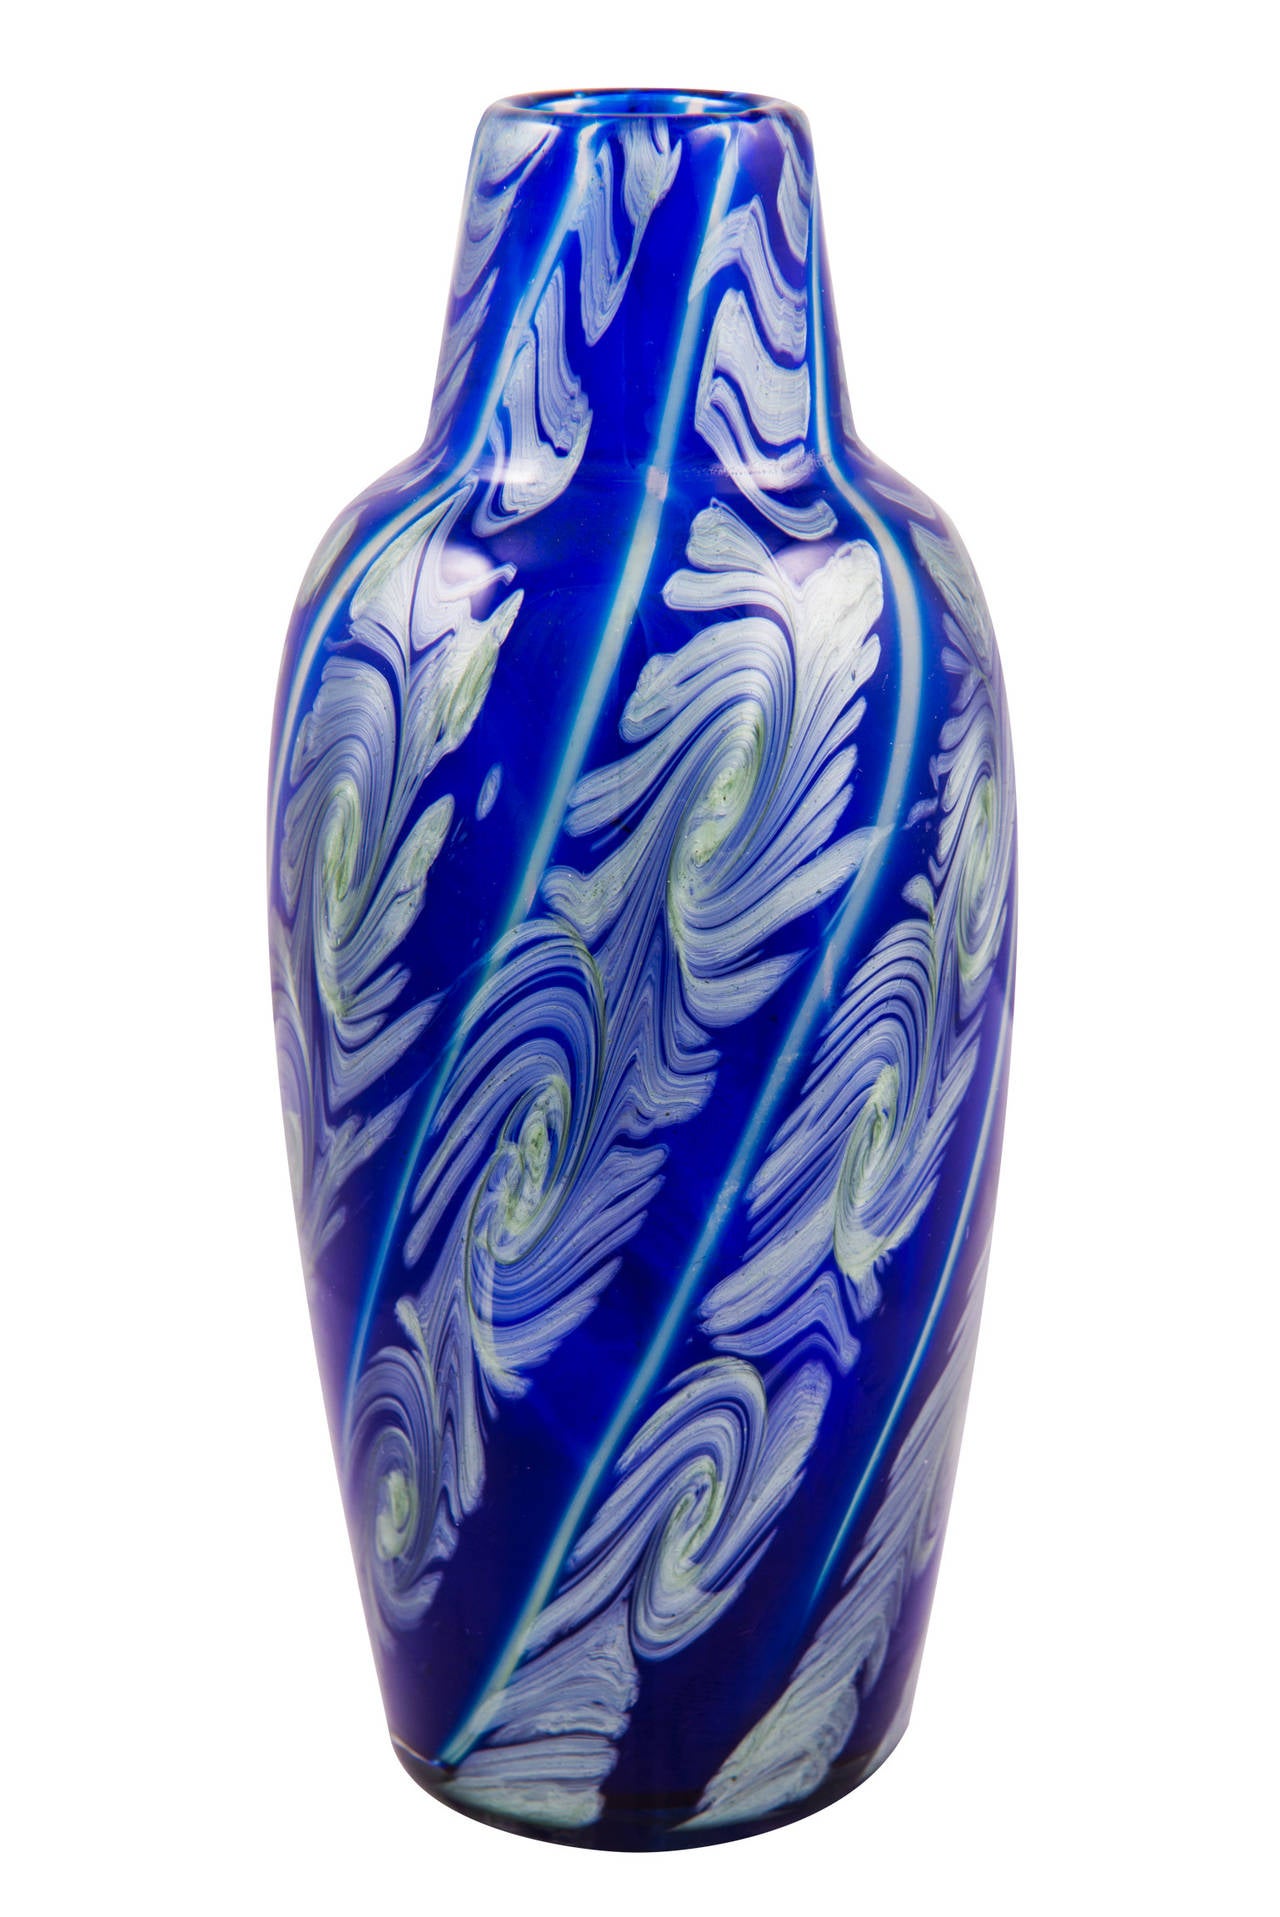 Austrian Loetz Vase Decoration Ausfuhrung 118 in Blue by Franz Hofstoetter, circa 1911